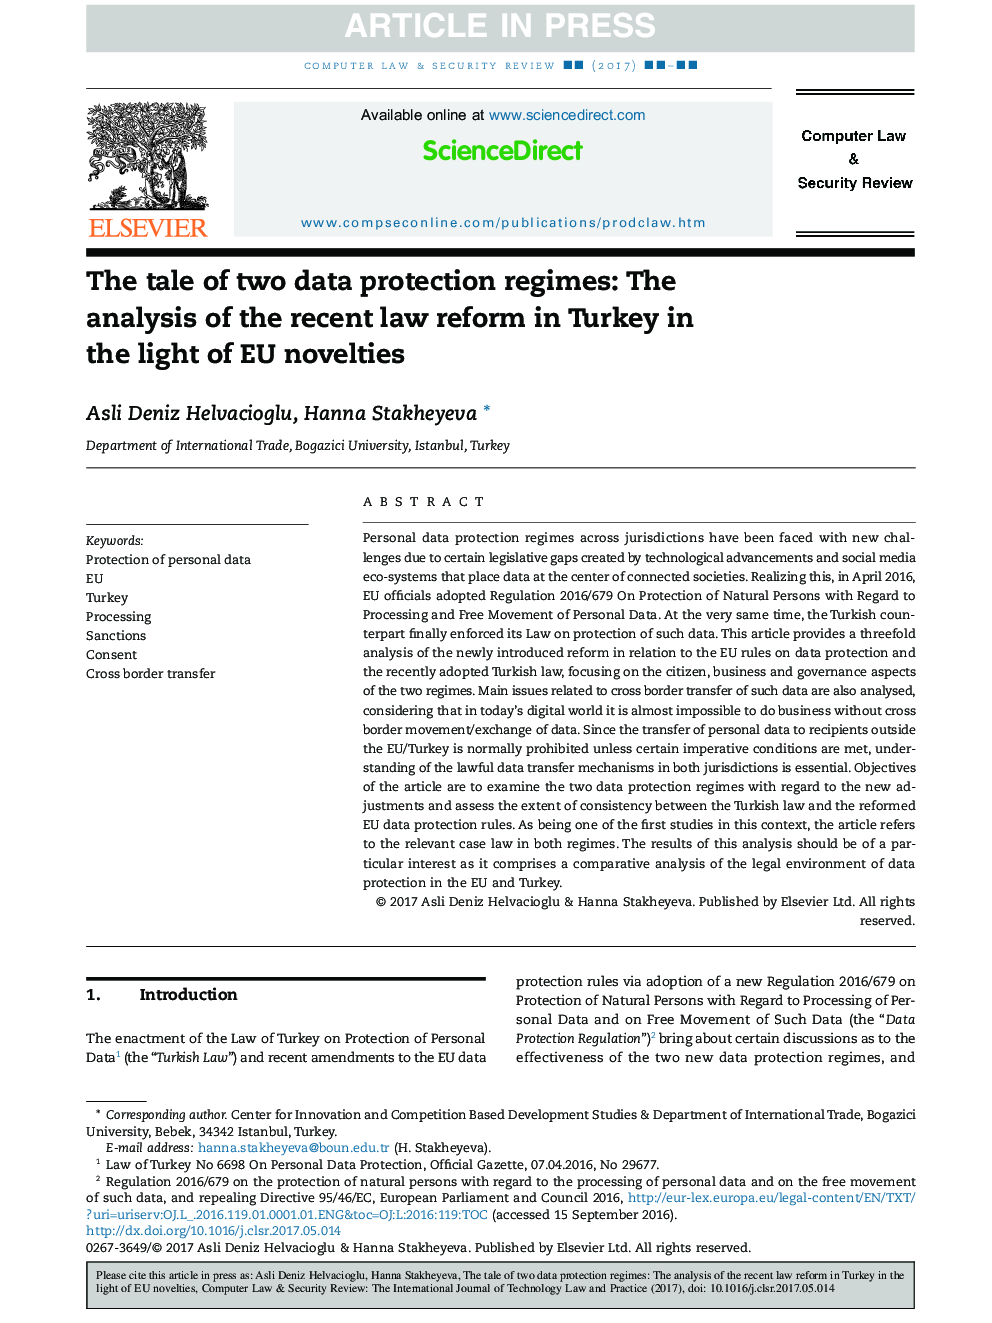 داستان دو رژیم حفاظت از اطلاعات: تجزیه و تحلیل اصلاحات اخیر قانون در ترکیه با توجه به نوآوری های اتحادیه اروپا 